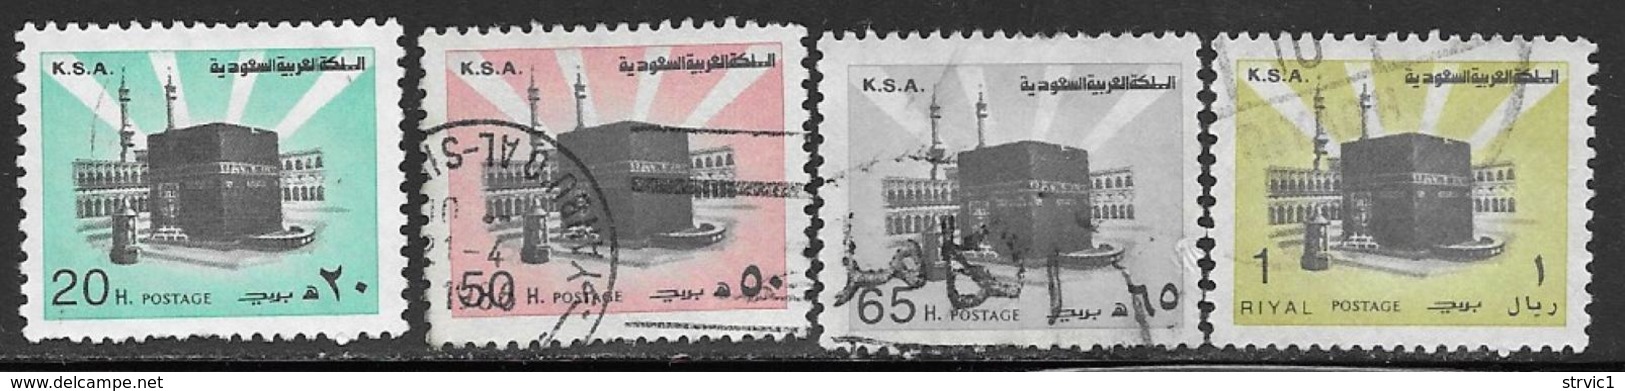 Saudi Arabia Scott # 874b,880b,881b,882b Used Holy Kaaba, 1982 - Saudi Arabia